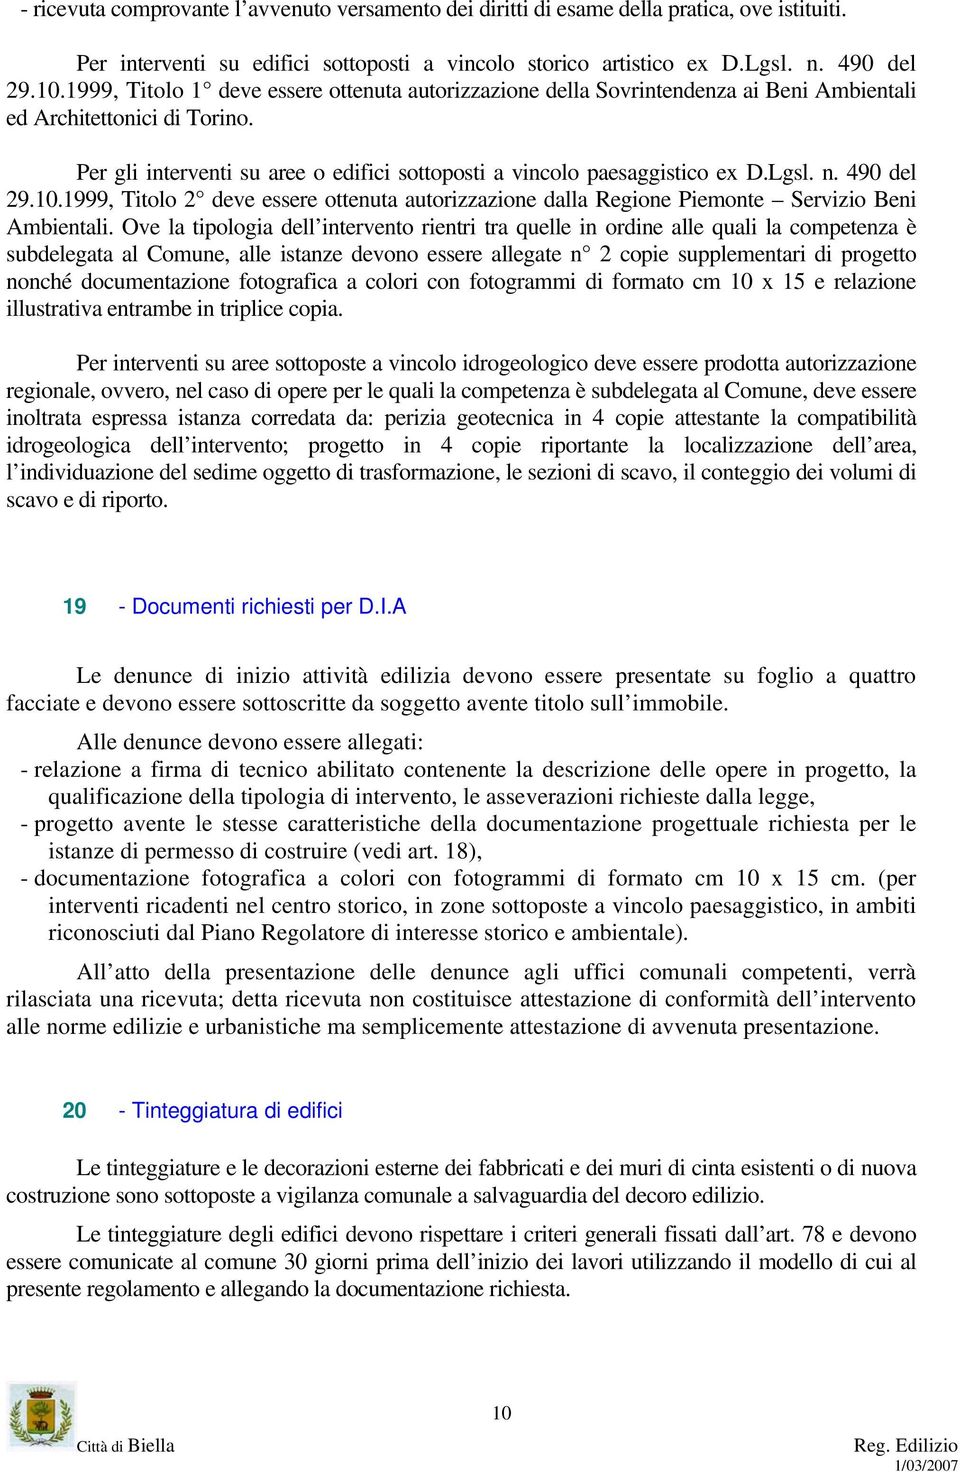 Lgsl. n. 490 del 29.10.1999, Titolo 2 deve essere ottenuta autorizzazione dalla Regione Piemonte Servizio Beni Ambientali.